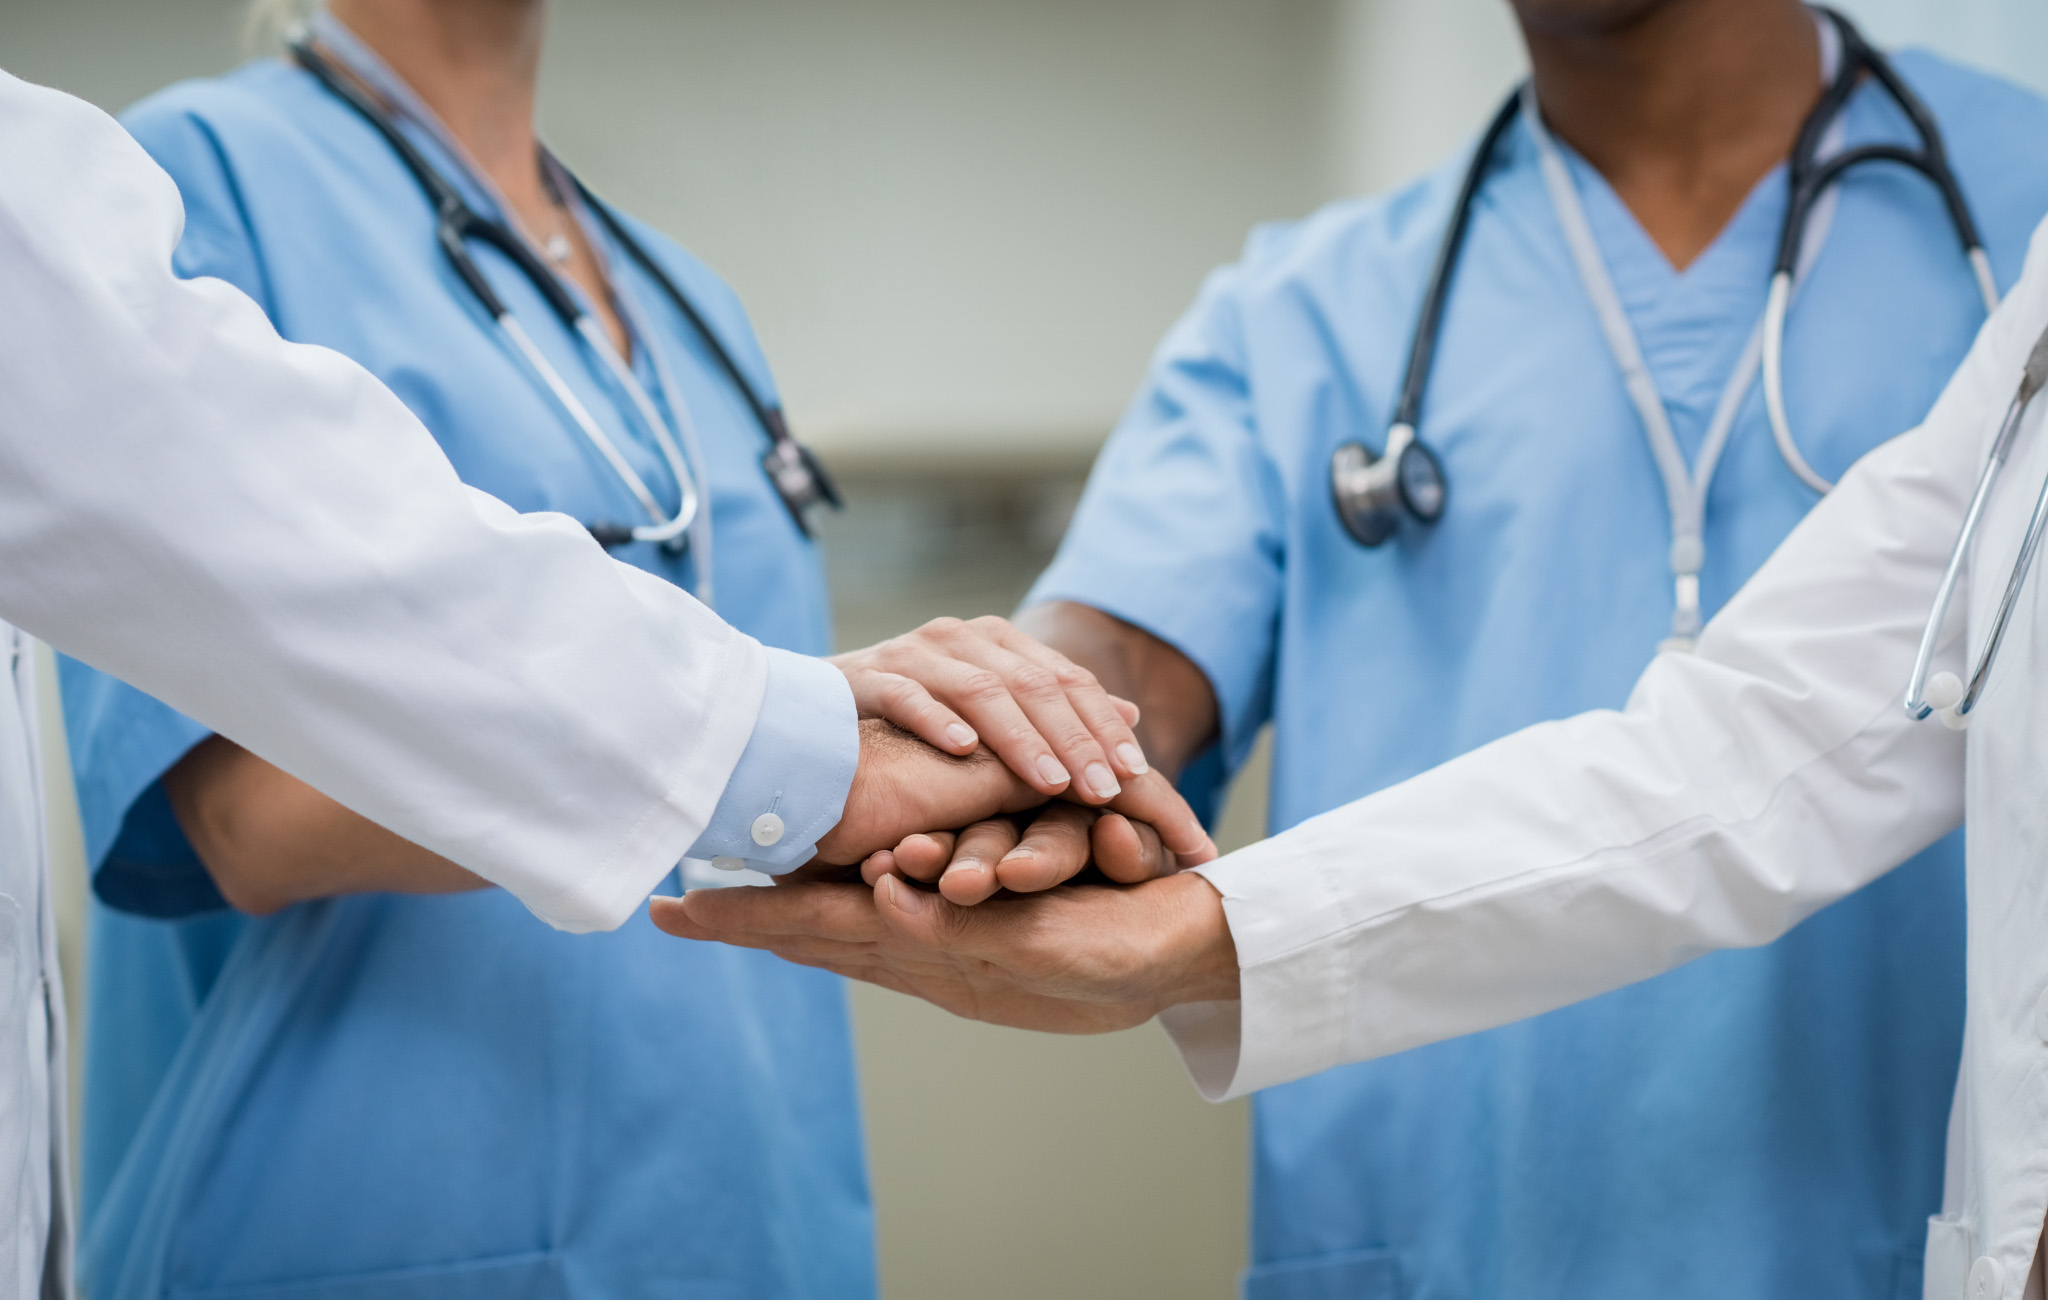 Zdjęcie medyków składających ręce w geście współpracy